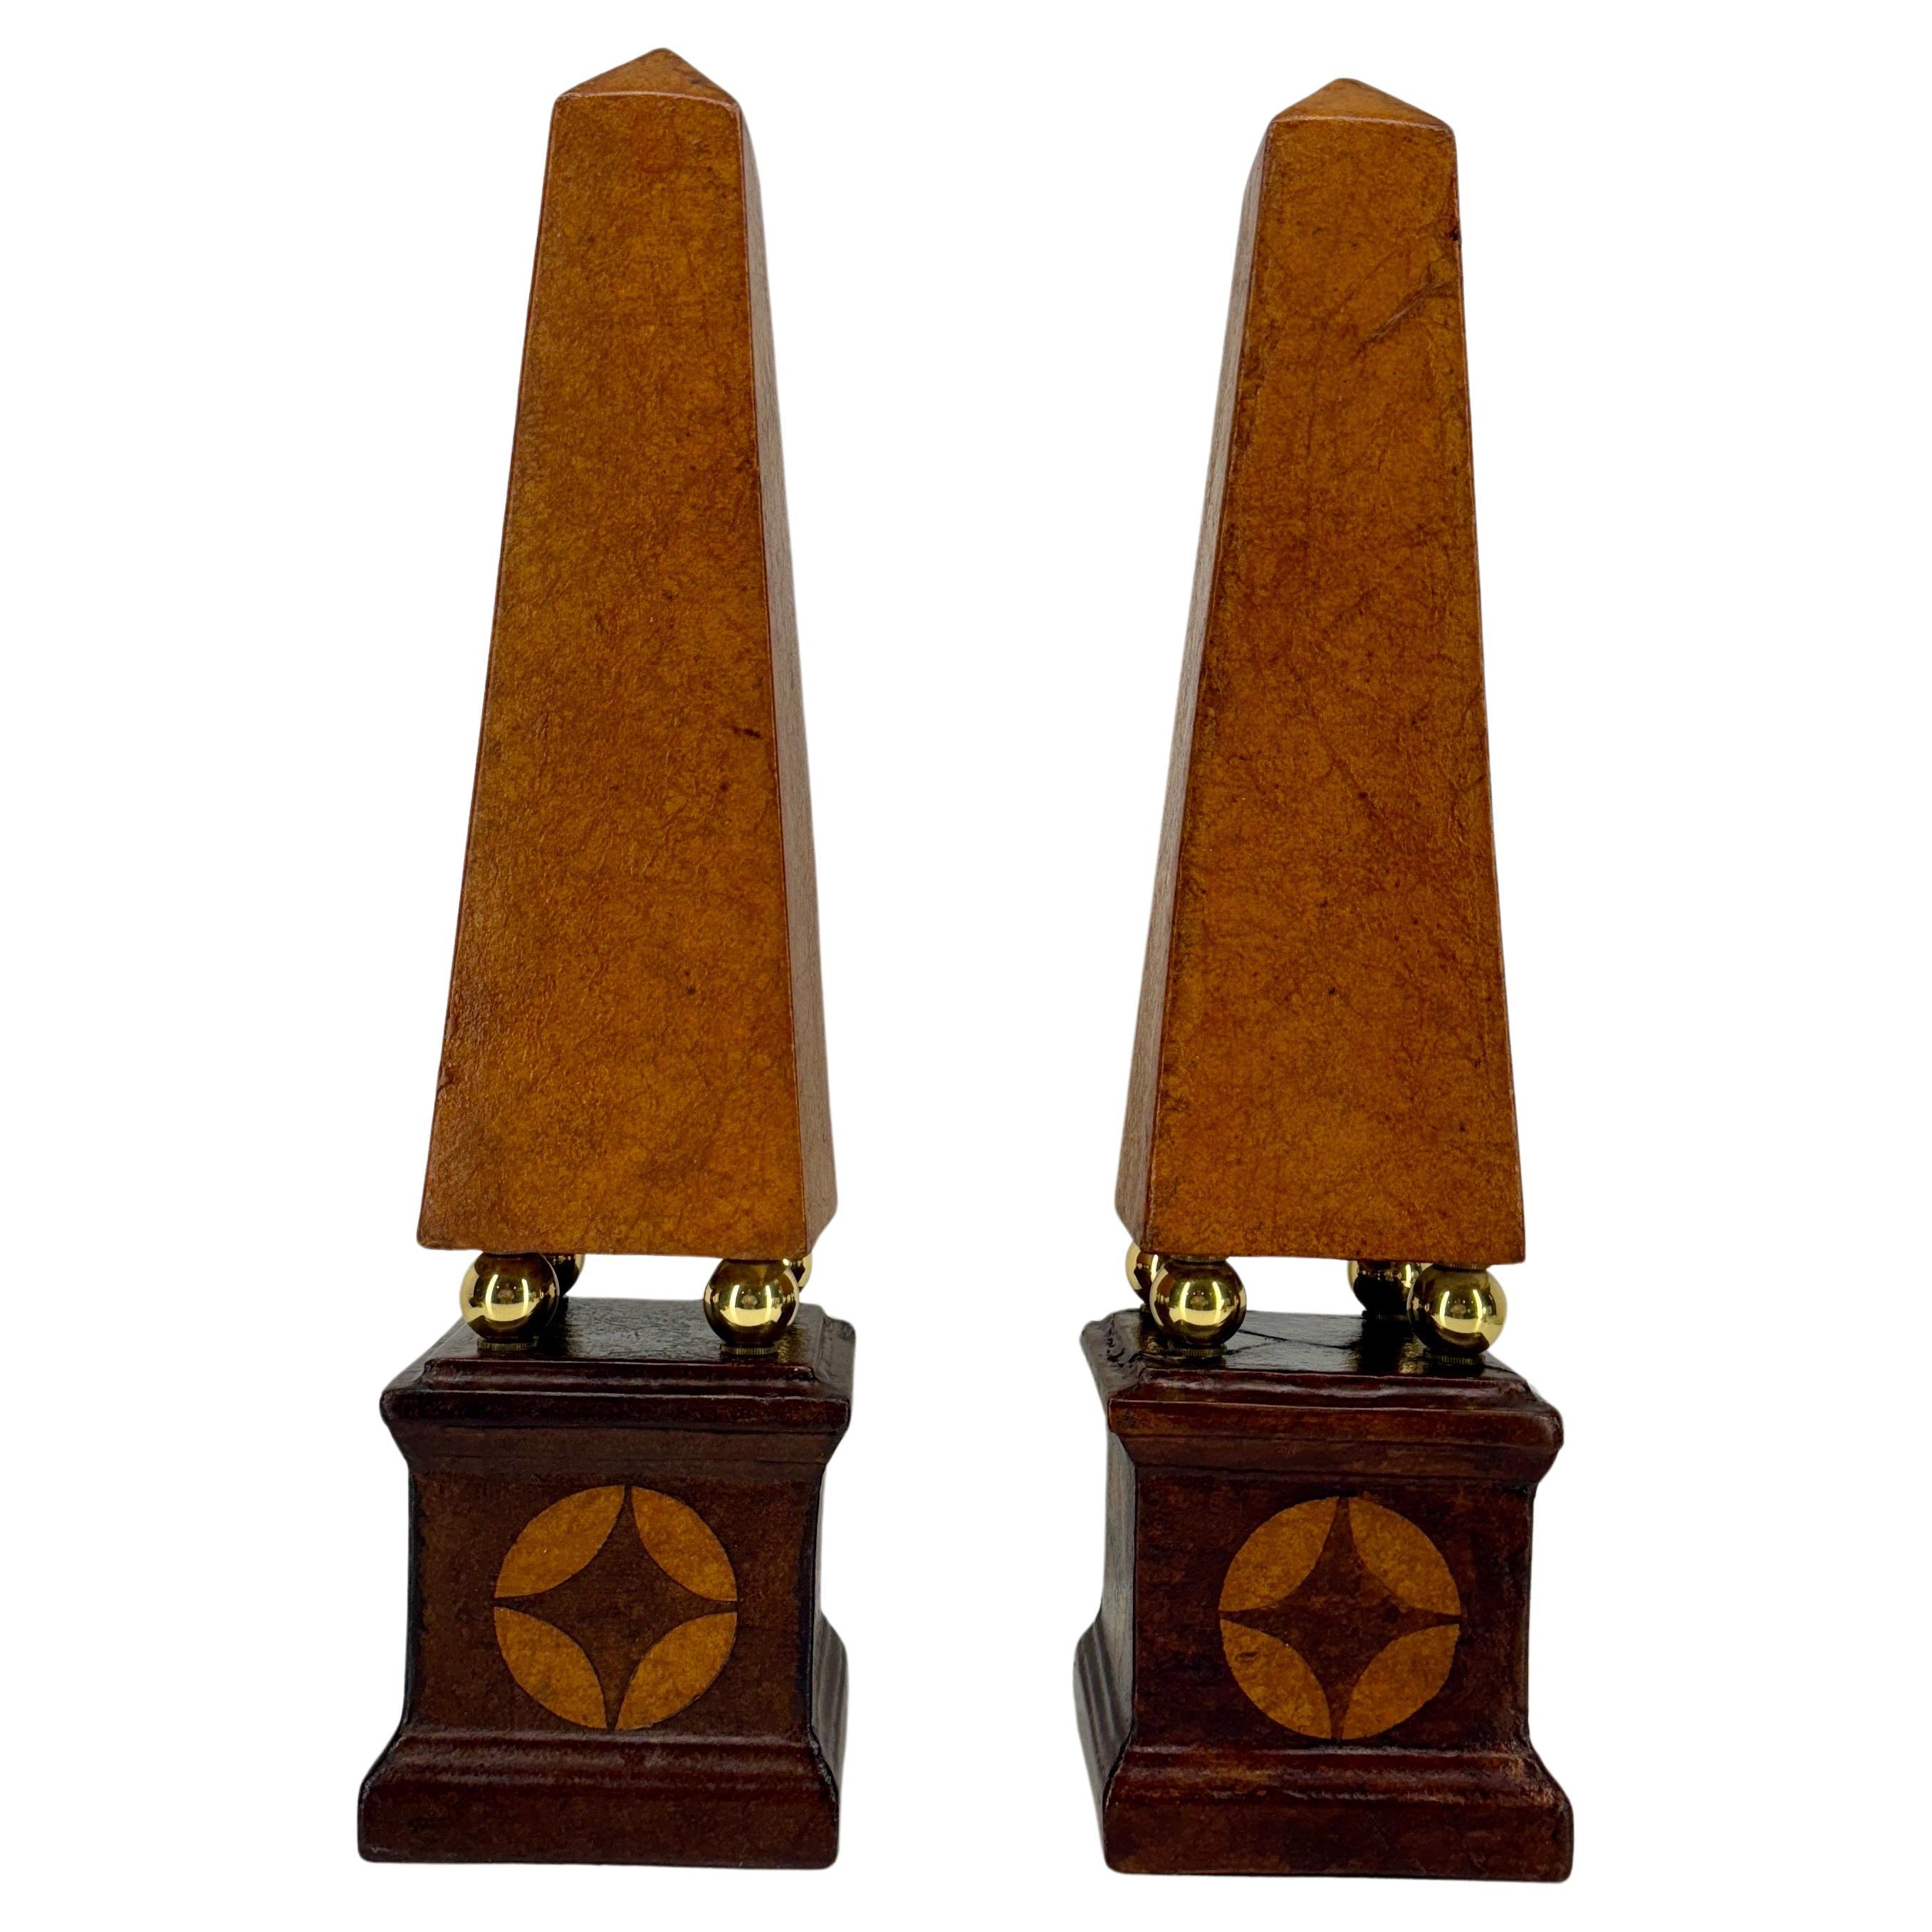 Ein fantastisches Paar mit Leder umwickelter Keramik-Obelisken aus Frankreich. 
Dieses zarte Keramikpaar ist in klassisches braunes Leder mit Messingkugeln als Detail geprägt. Dieses klassische Set, jeweils 21,75